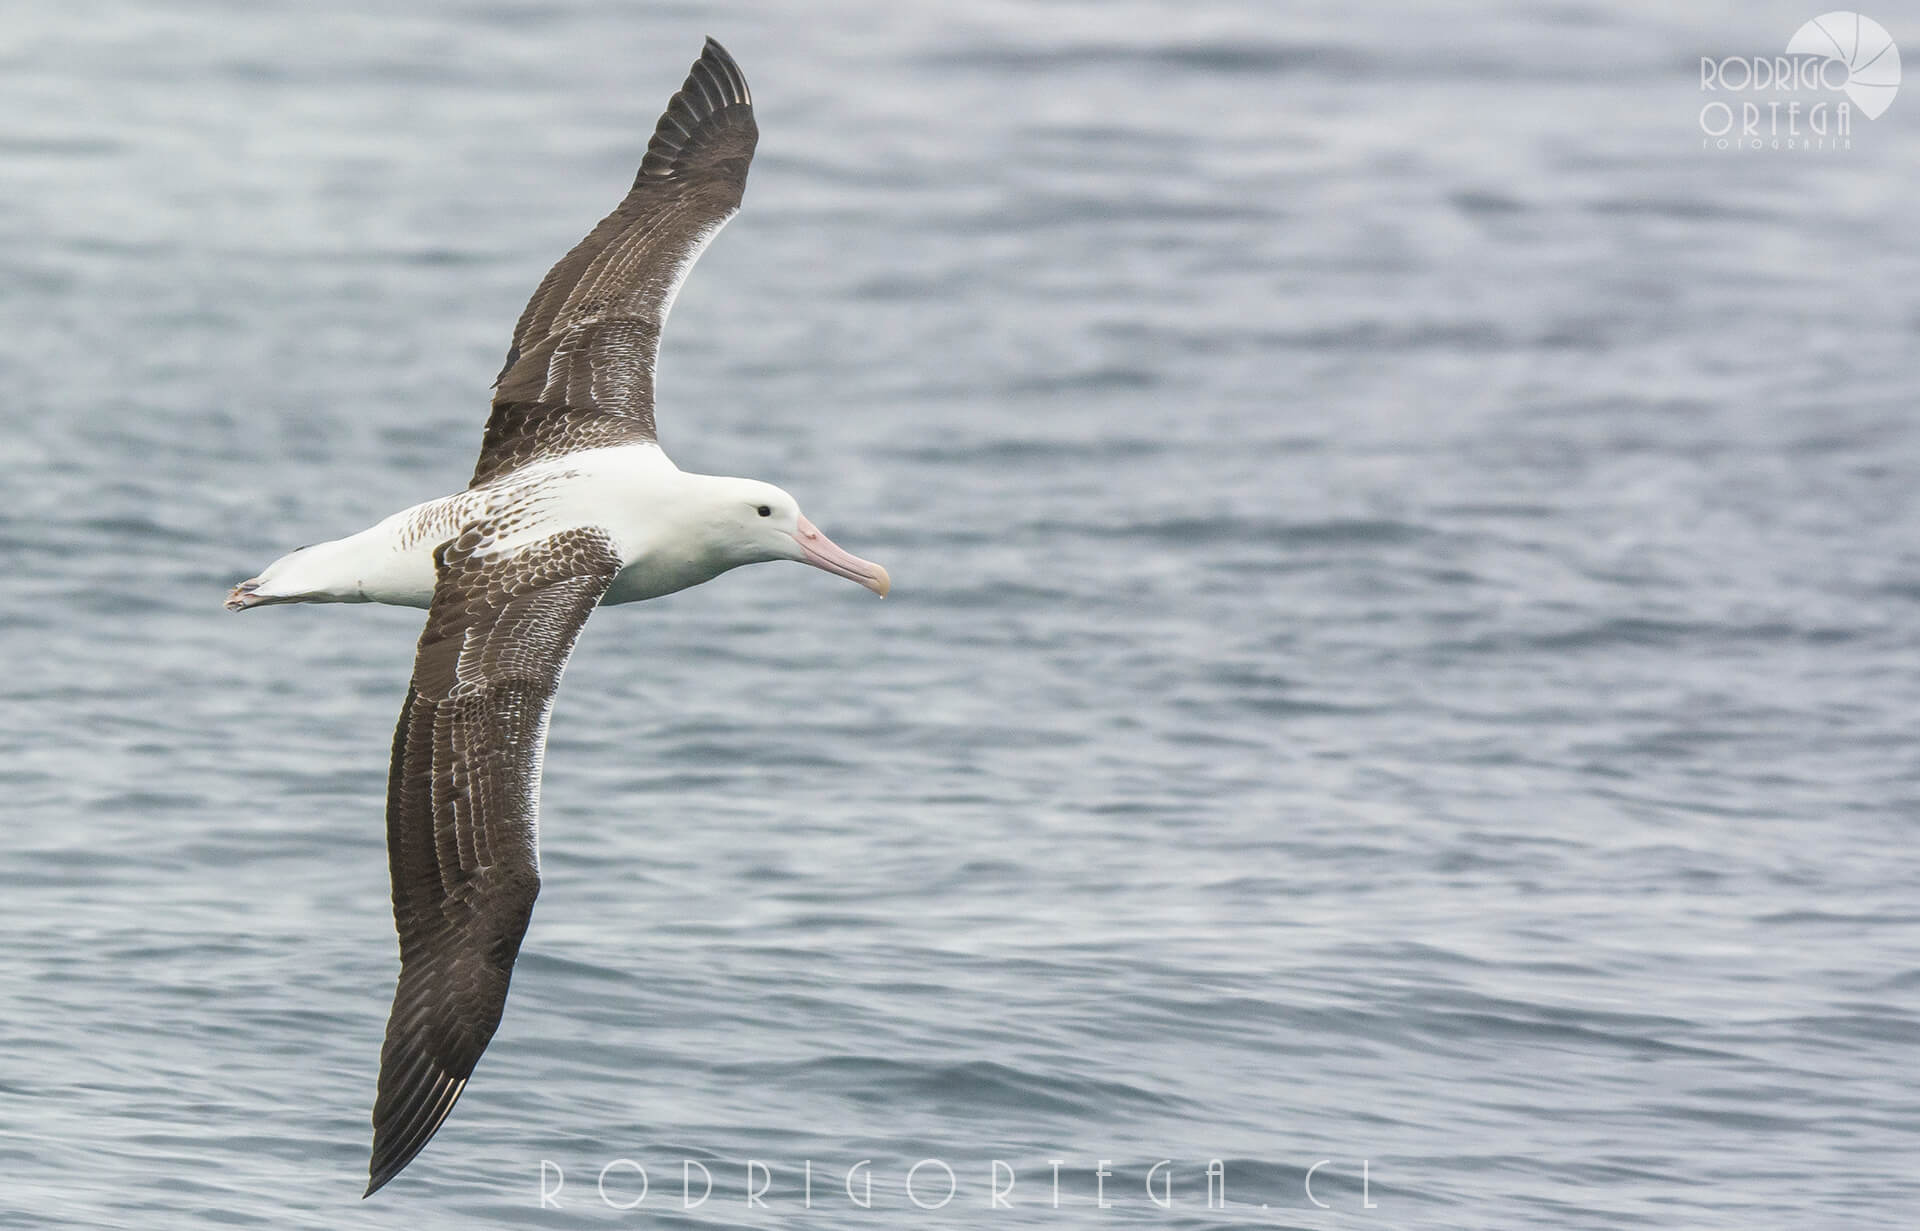 Albatros real del sur 1 Rodrigo Ortega - Naturaleza & Outdoor Albatros real del sur 1